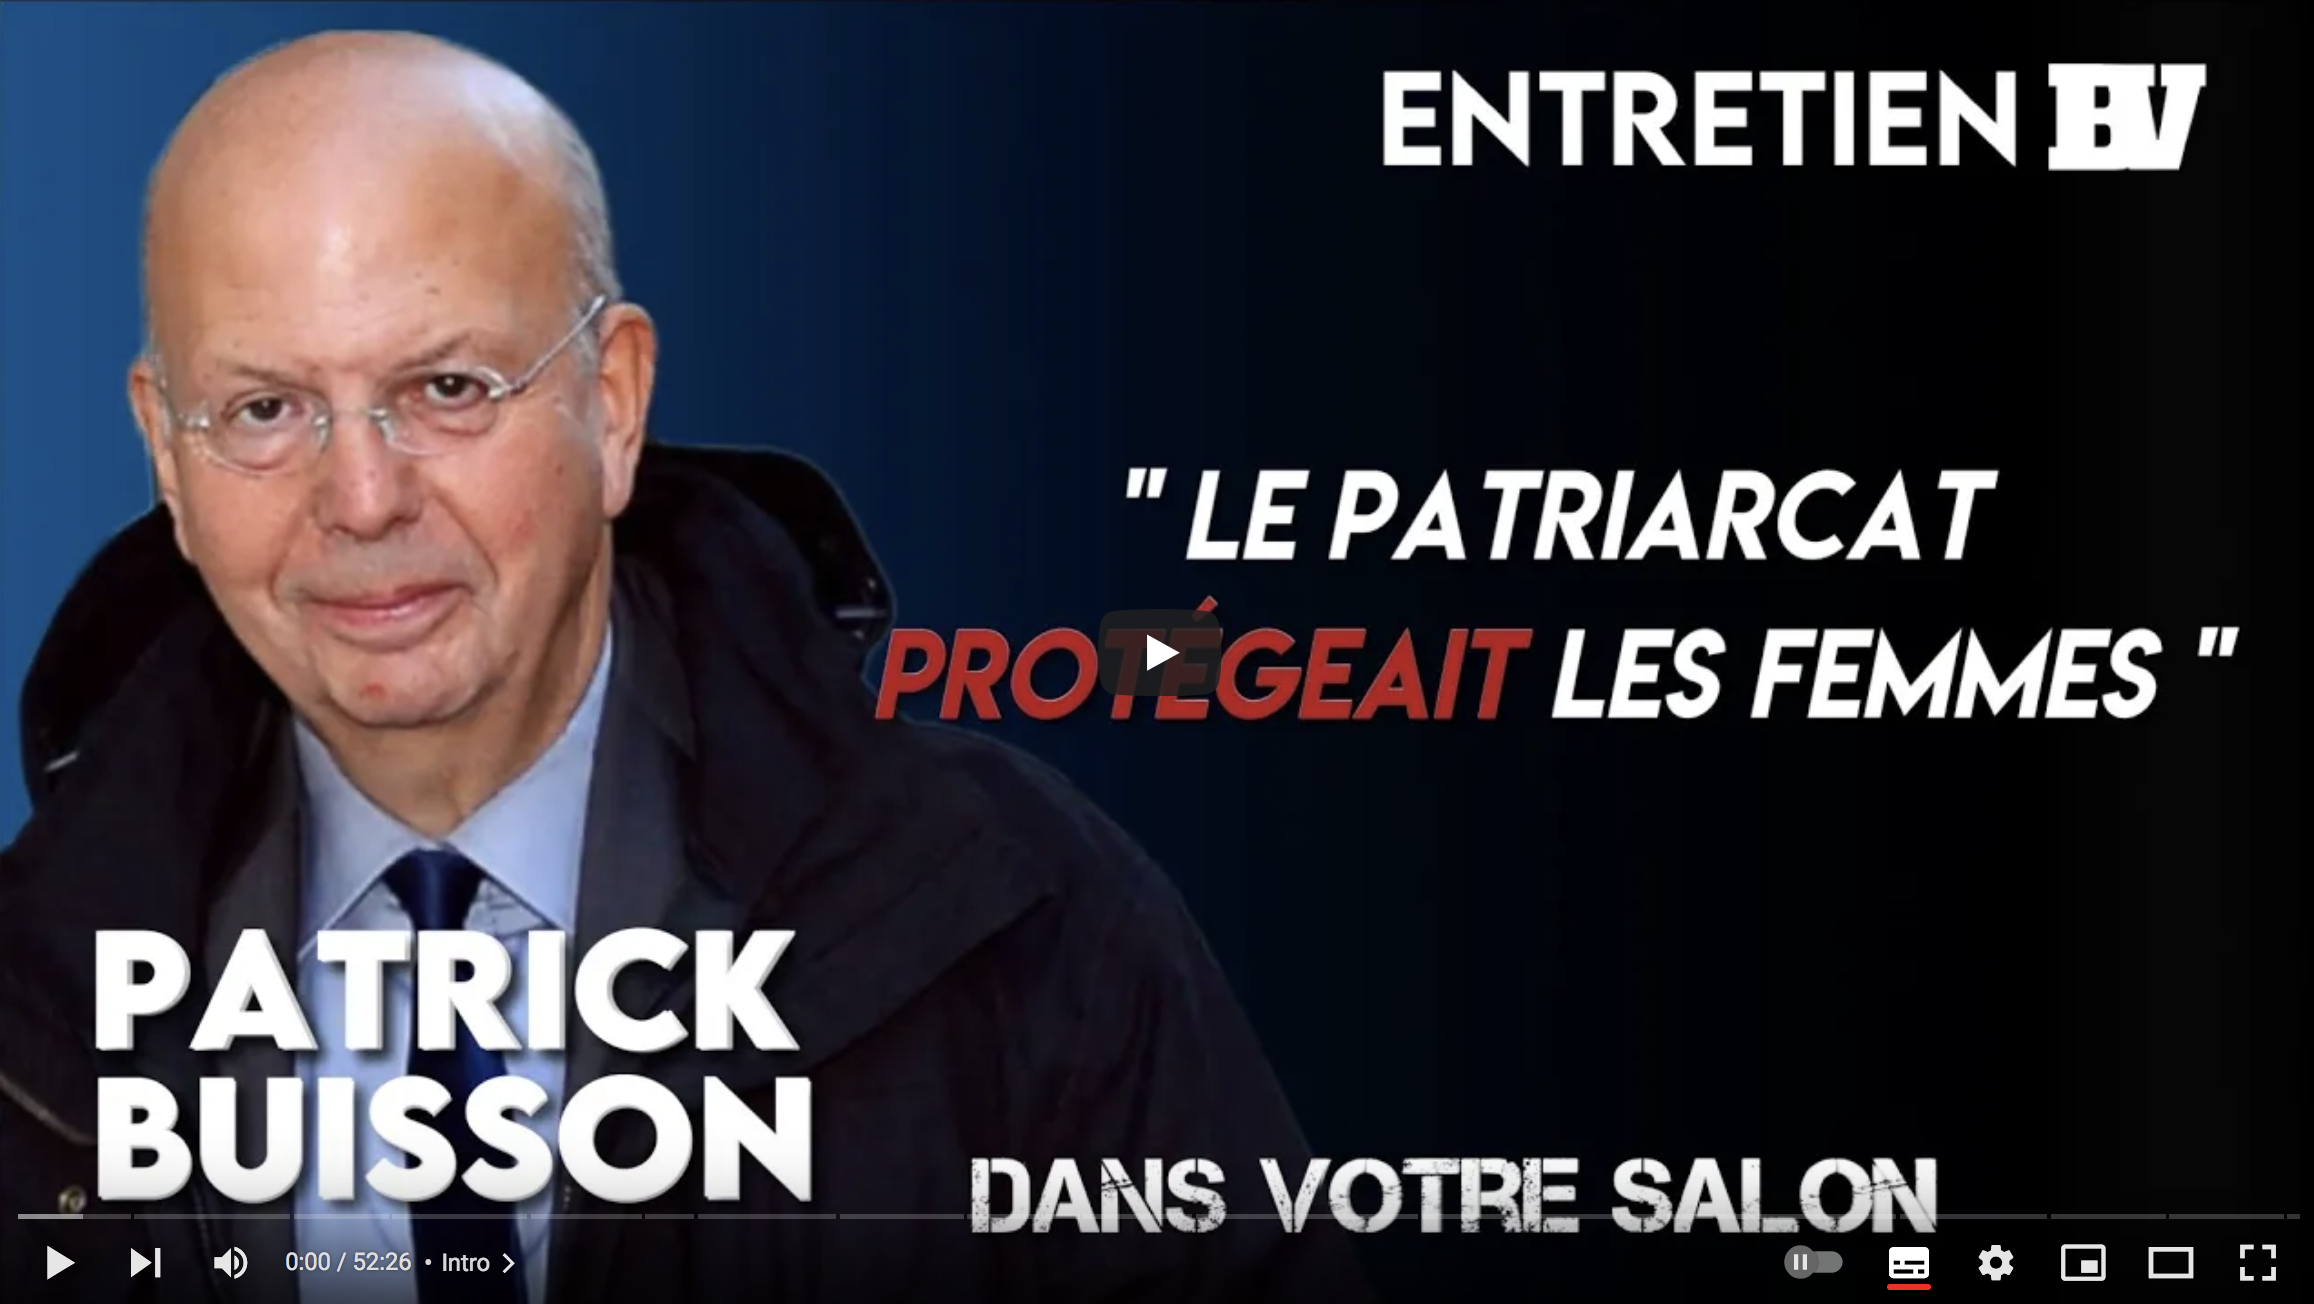 Patrick Buisson : “Le patriarcat protégeait les femmes” (ENTRETIEN)